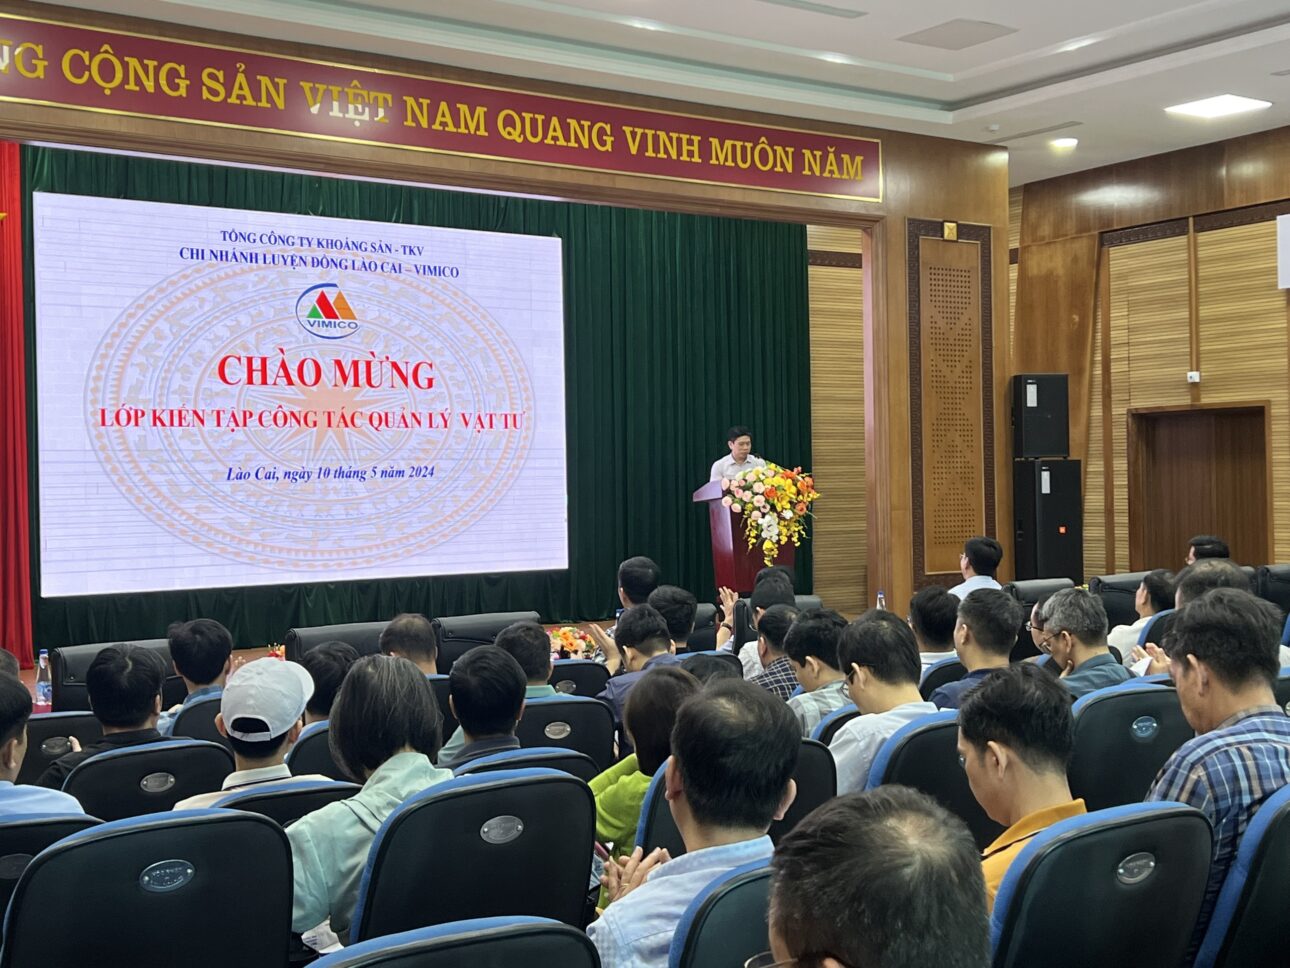 Ông Trần Quang Minh, Phó Trưởng ban Ban VTM - TKV phát biểu tại chương trình kiến tập của lớp học